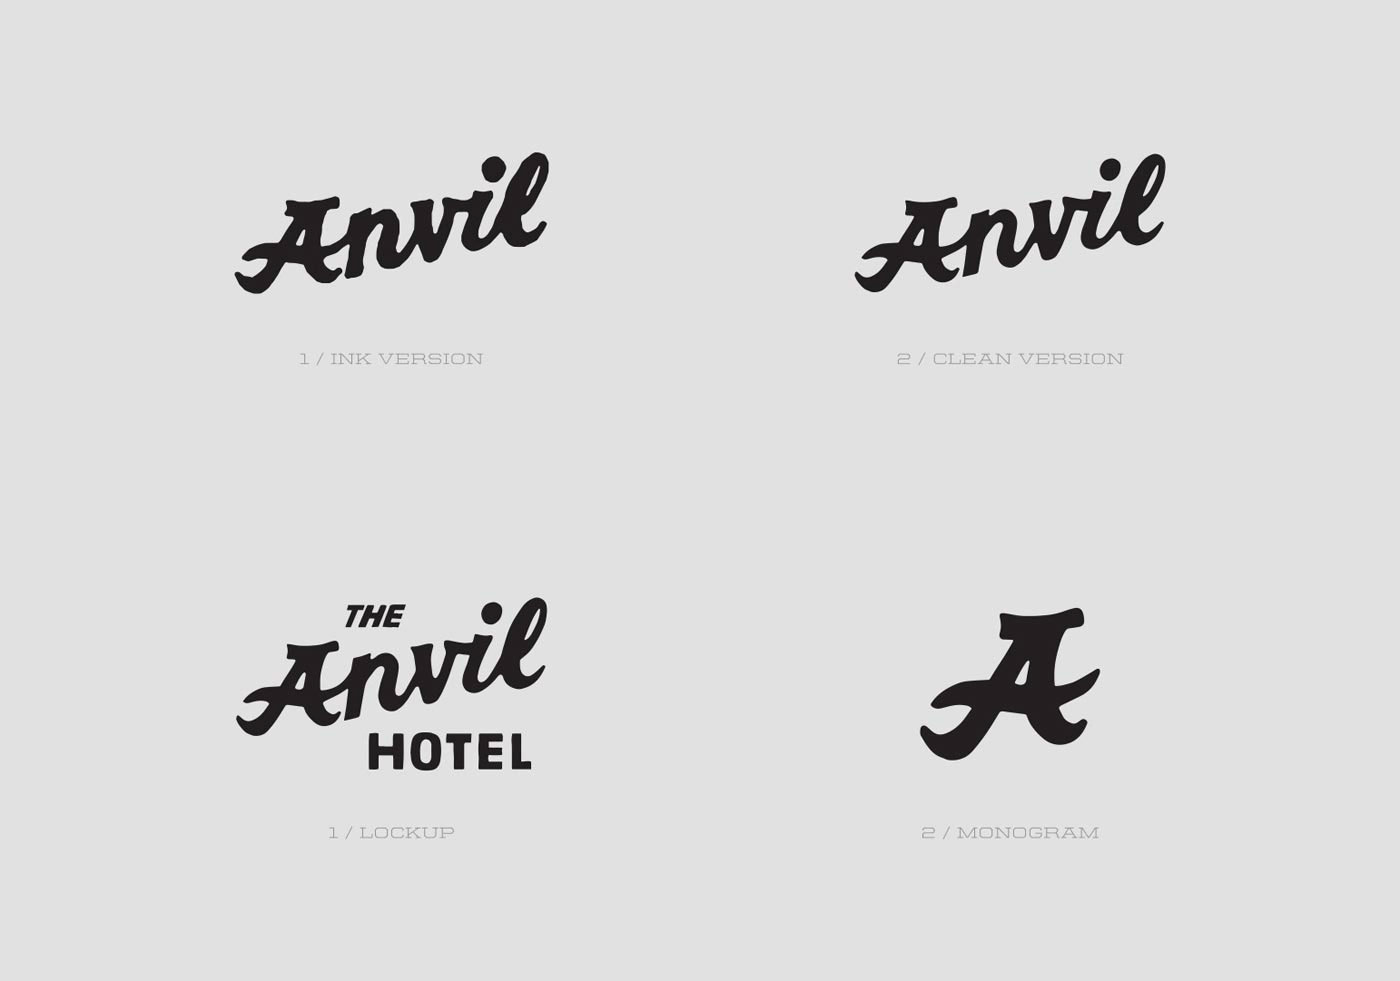 jon contino Contino Jon Contino Studio Anvil Hotel The Anvil Hotel branding  brand identity Logo Design Hotel Branding